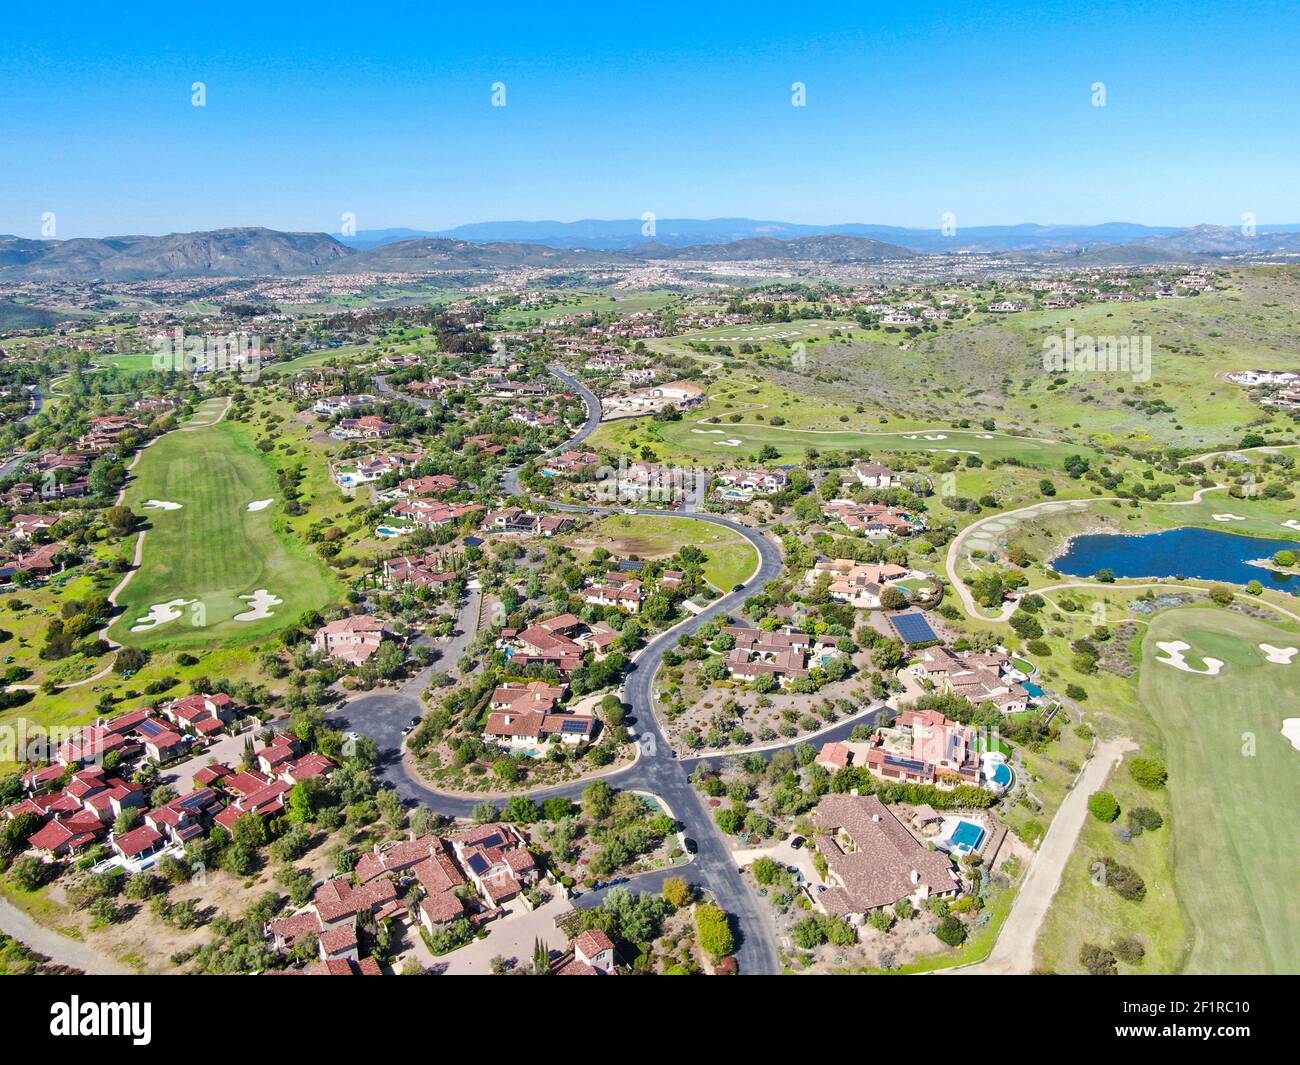 Grande villa de luxe avec piscine située à côté du terrain de golf dans une communauté privée Banque D'Images